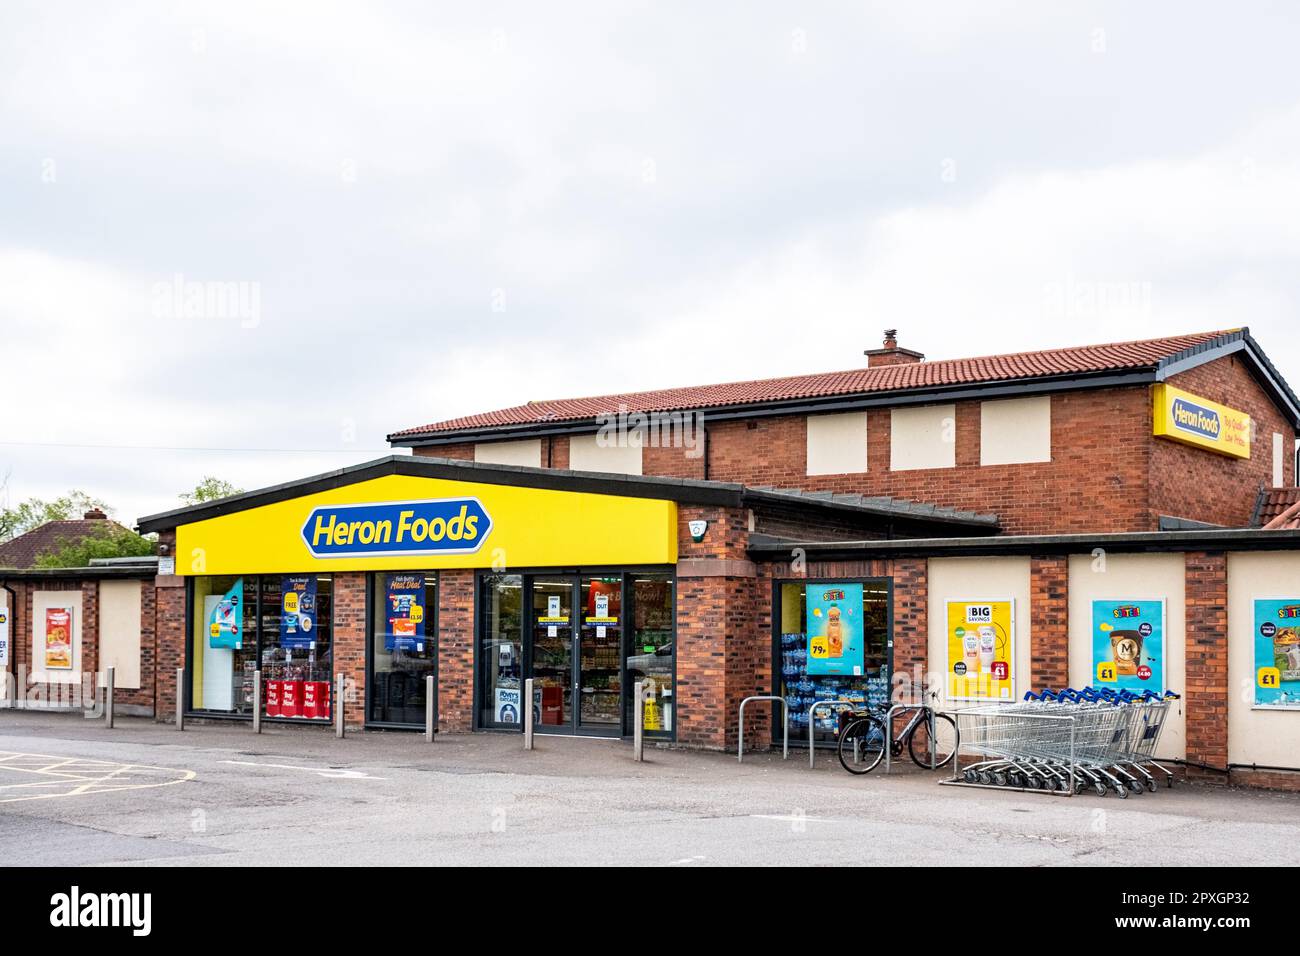 L'ancien pub Merlin maintenant supermarché Heron Foods à Leighton, Crewe Cheshire Royaume-Uni Banque D'Images